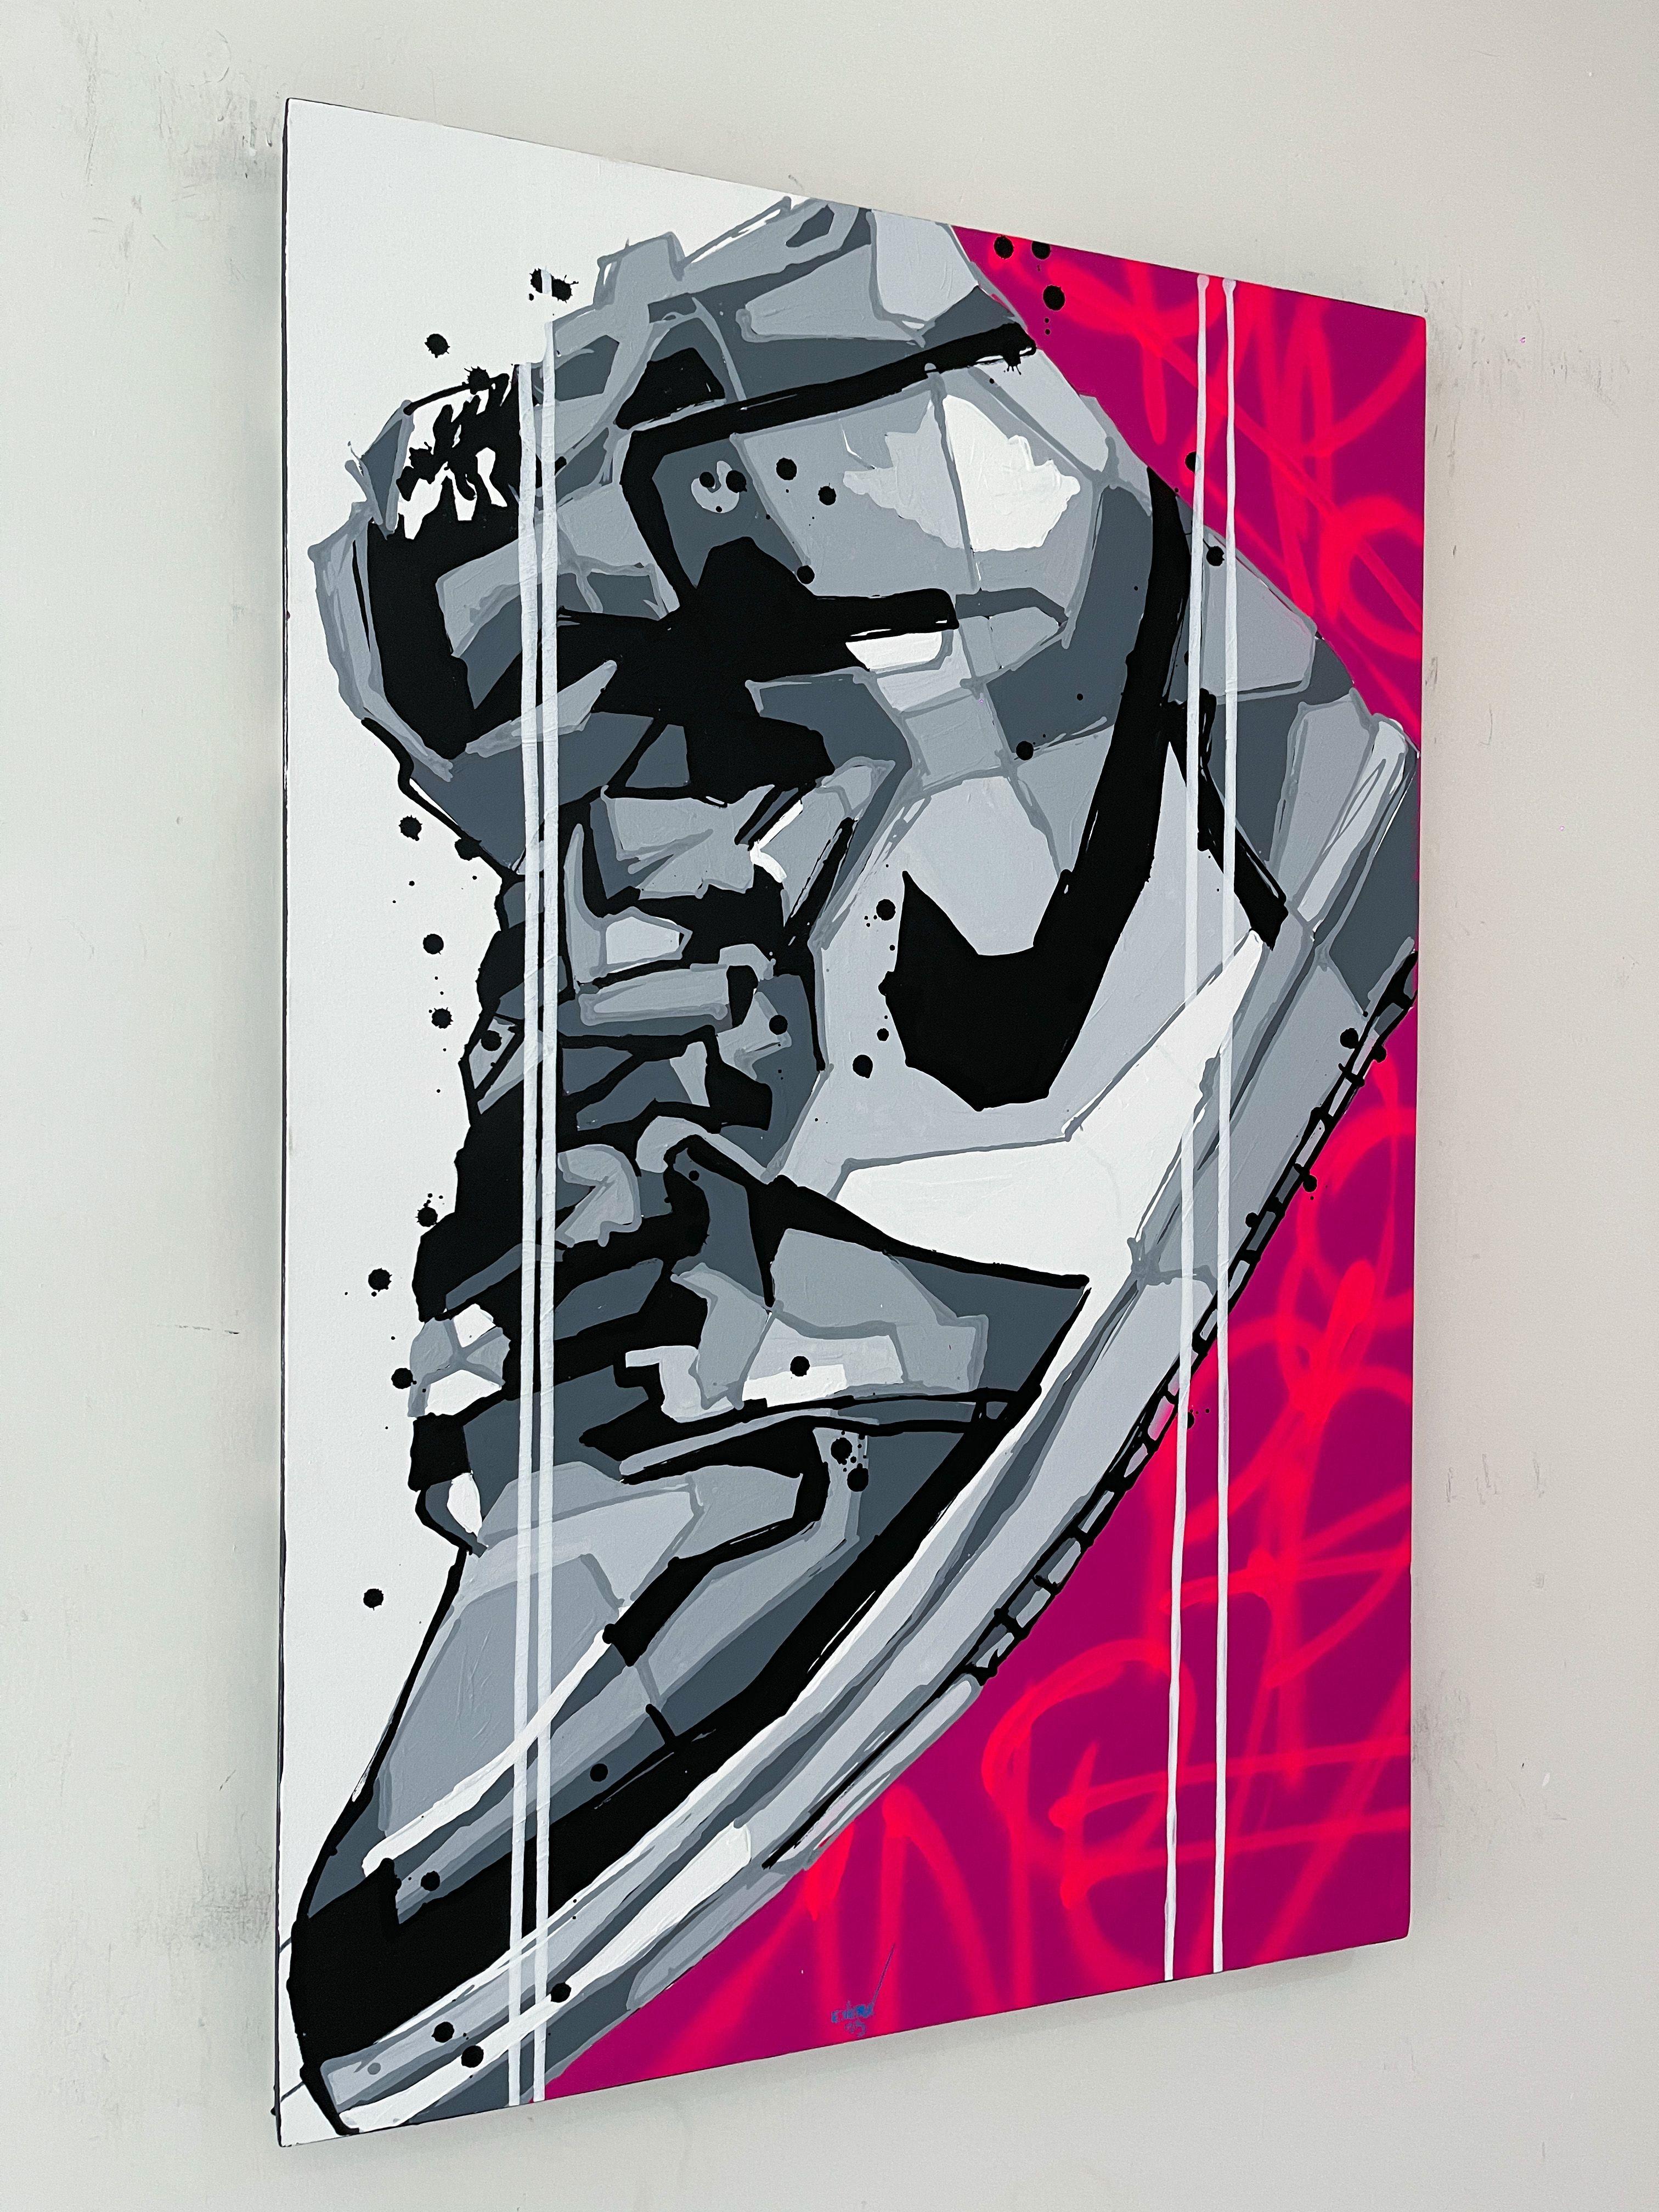 Les œuvres d'art de cette série en édition limitée sont visuellement frappantes et capturent le design emblématique des chaussures Air Jordan 1 d'une manière audacieuse et énergique. L'utilisation de l'acrylique et de la peinture en aérosol ajoute